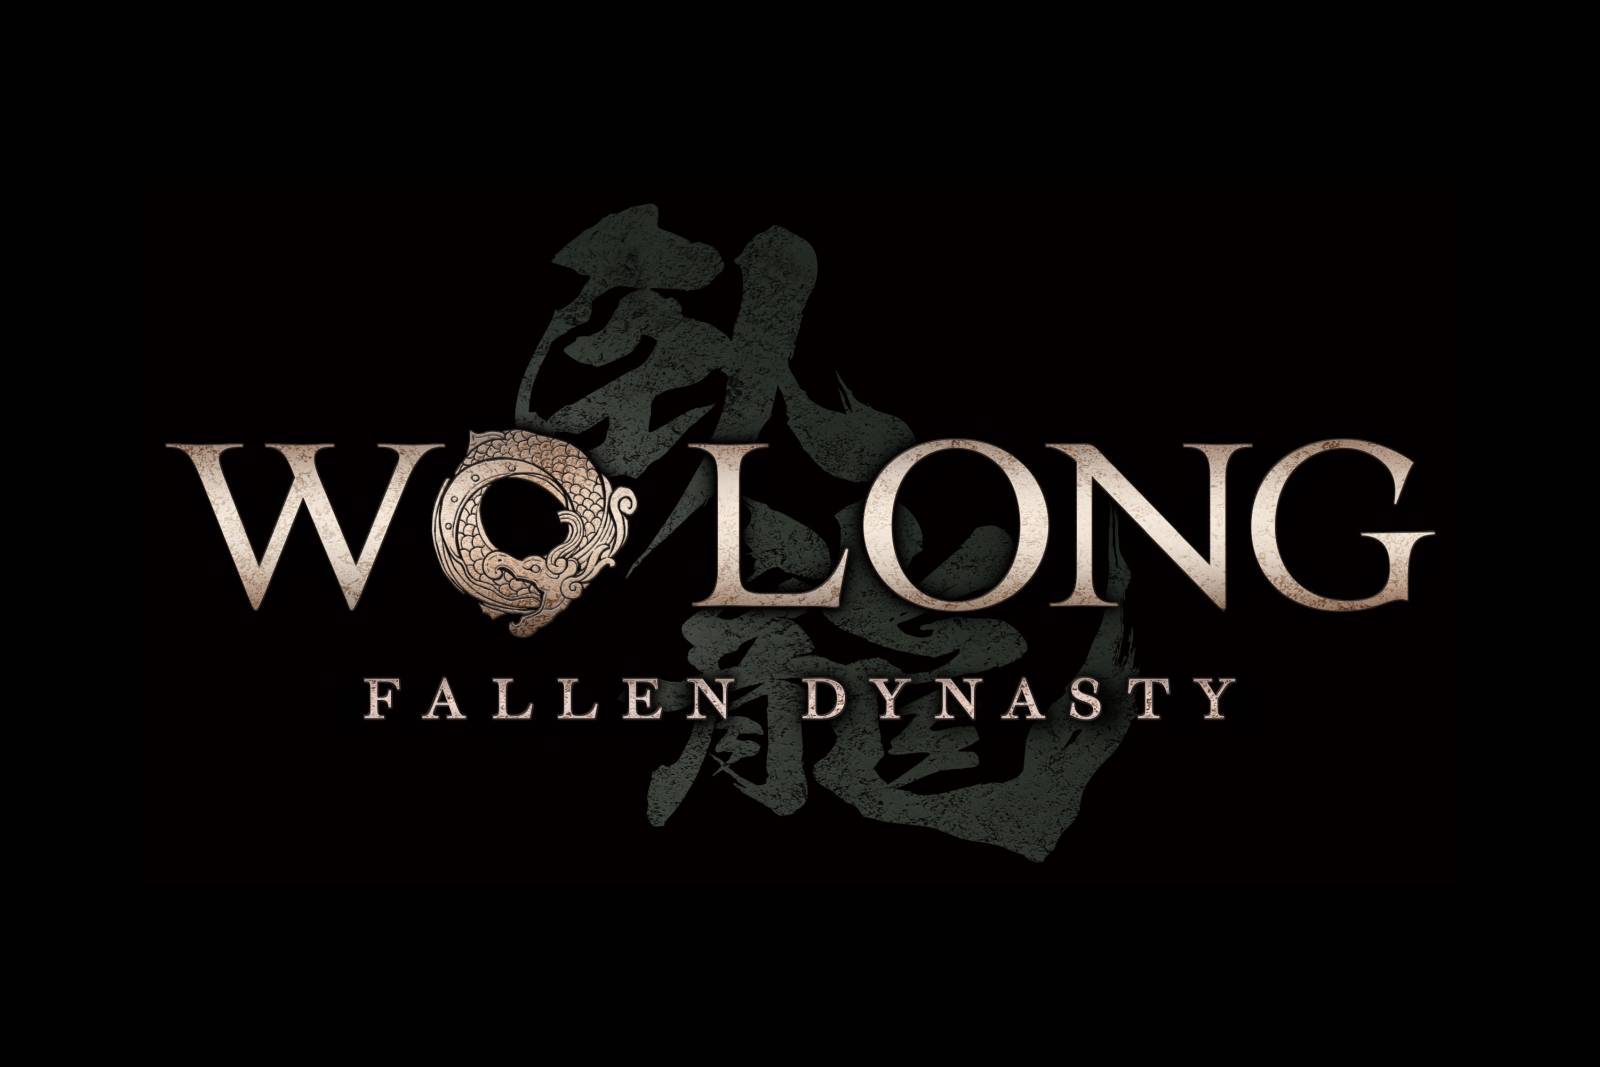 Wo Long Fallen Dynasty